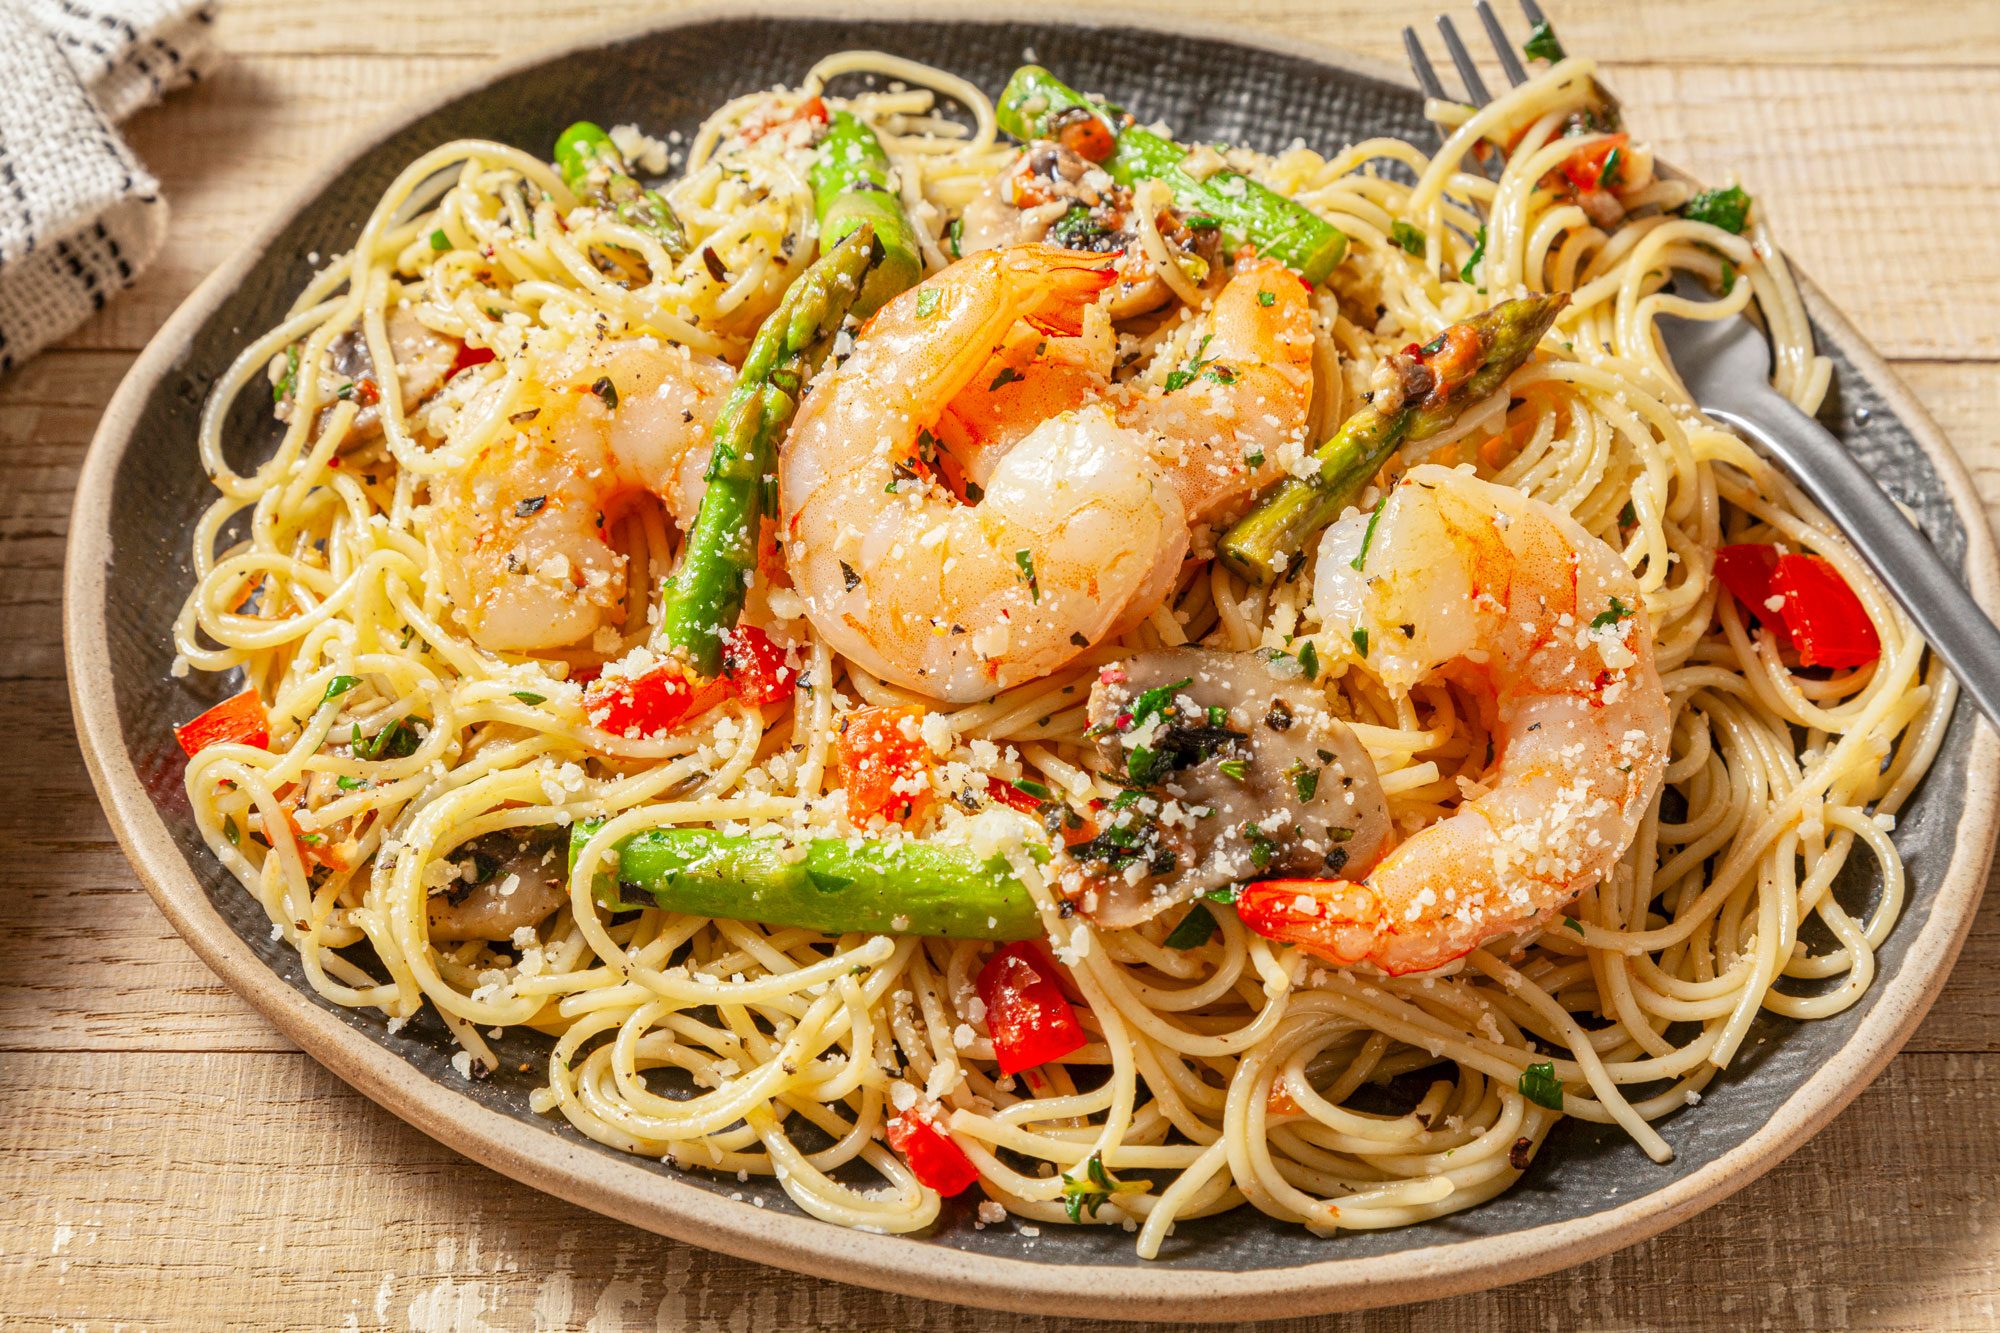 A delicious plate of Shrimp Pasta Primavera served with spaghetti